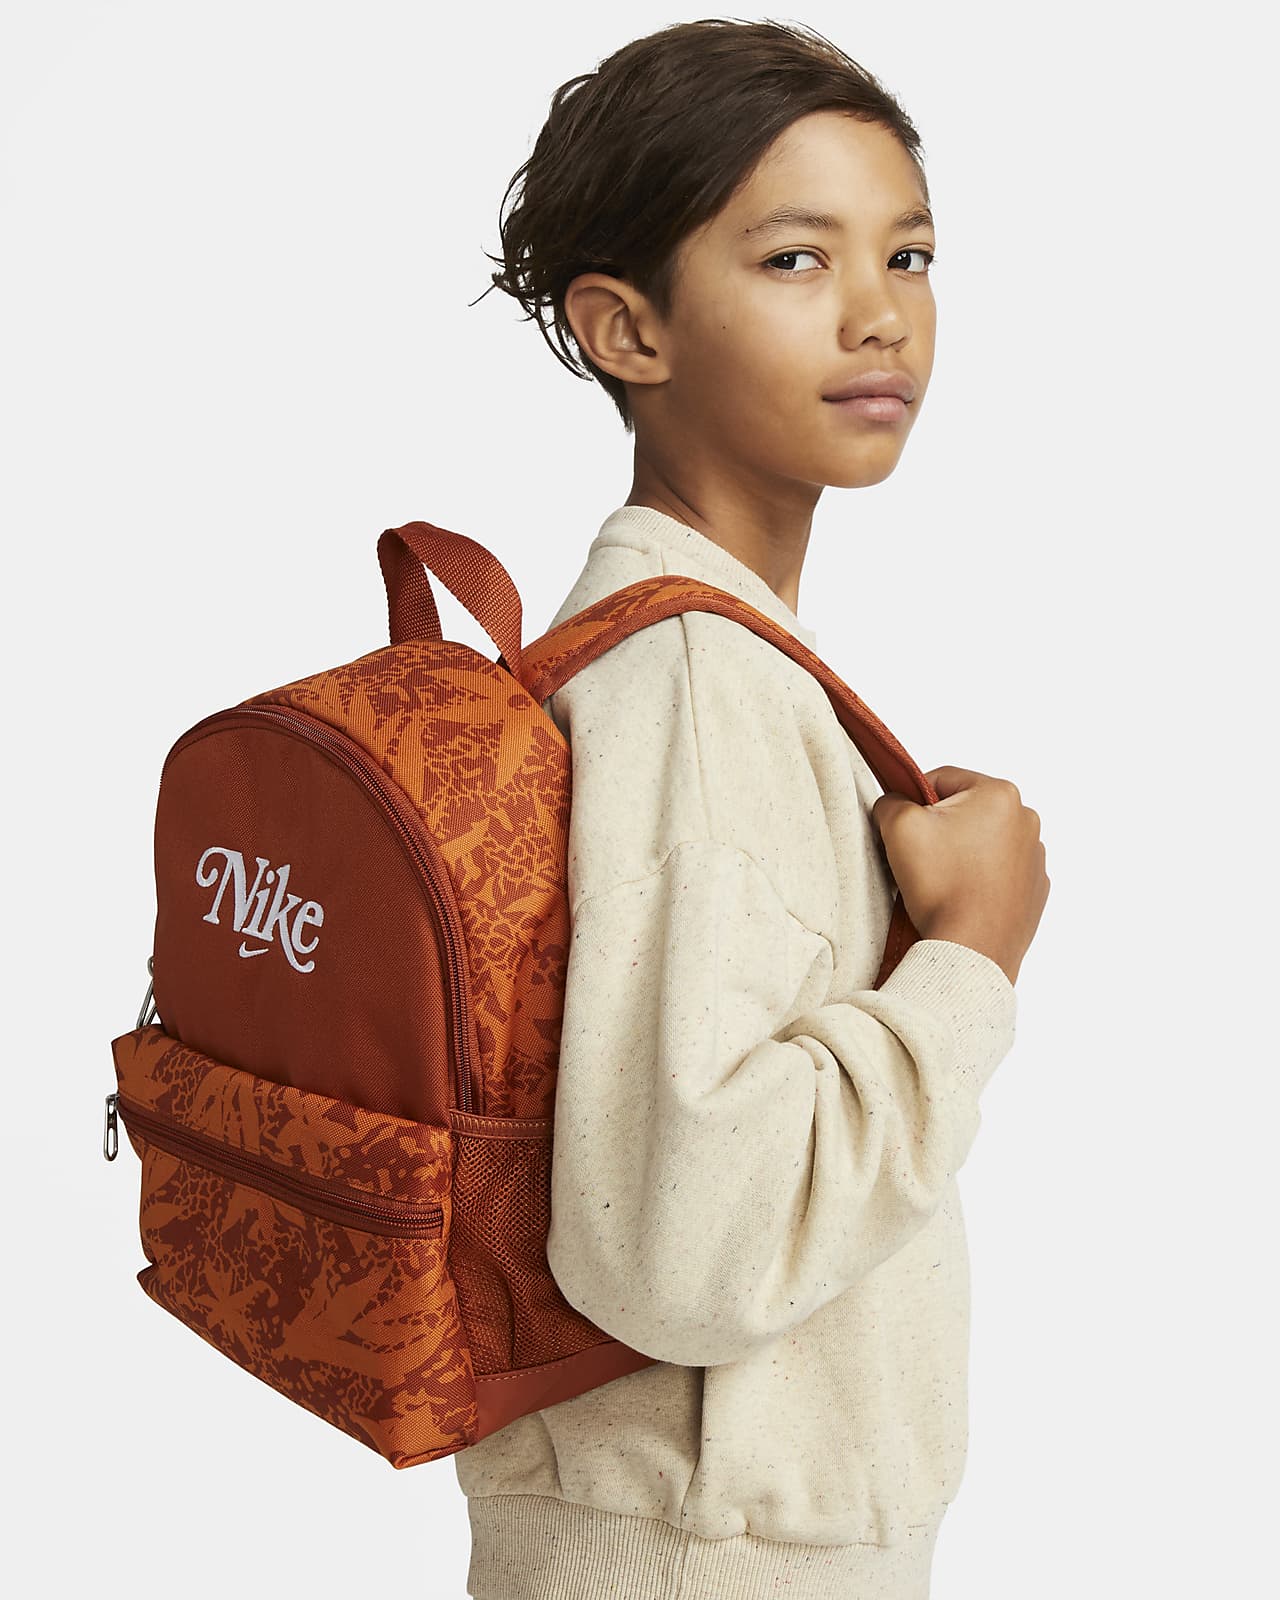 Nike Brasilia JDI Kids' Backpack (Mini).